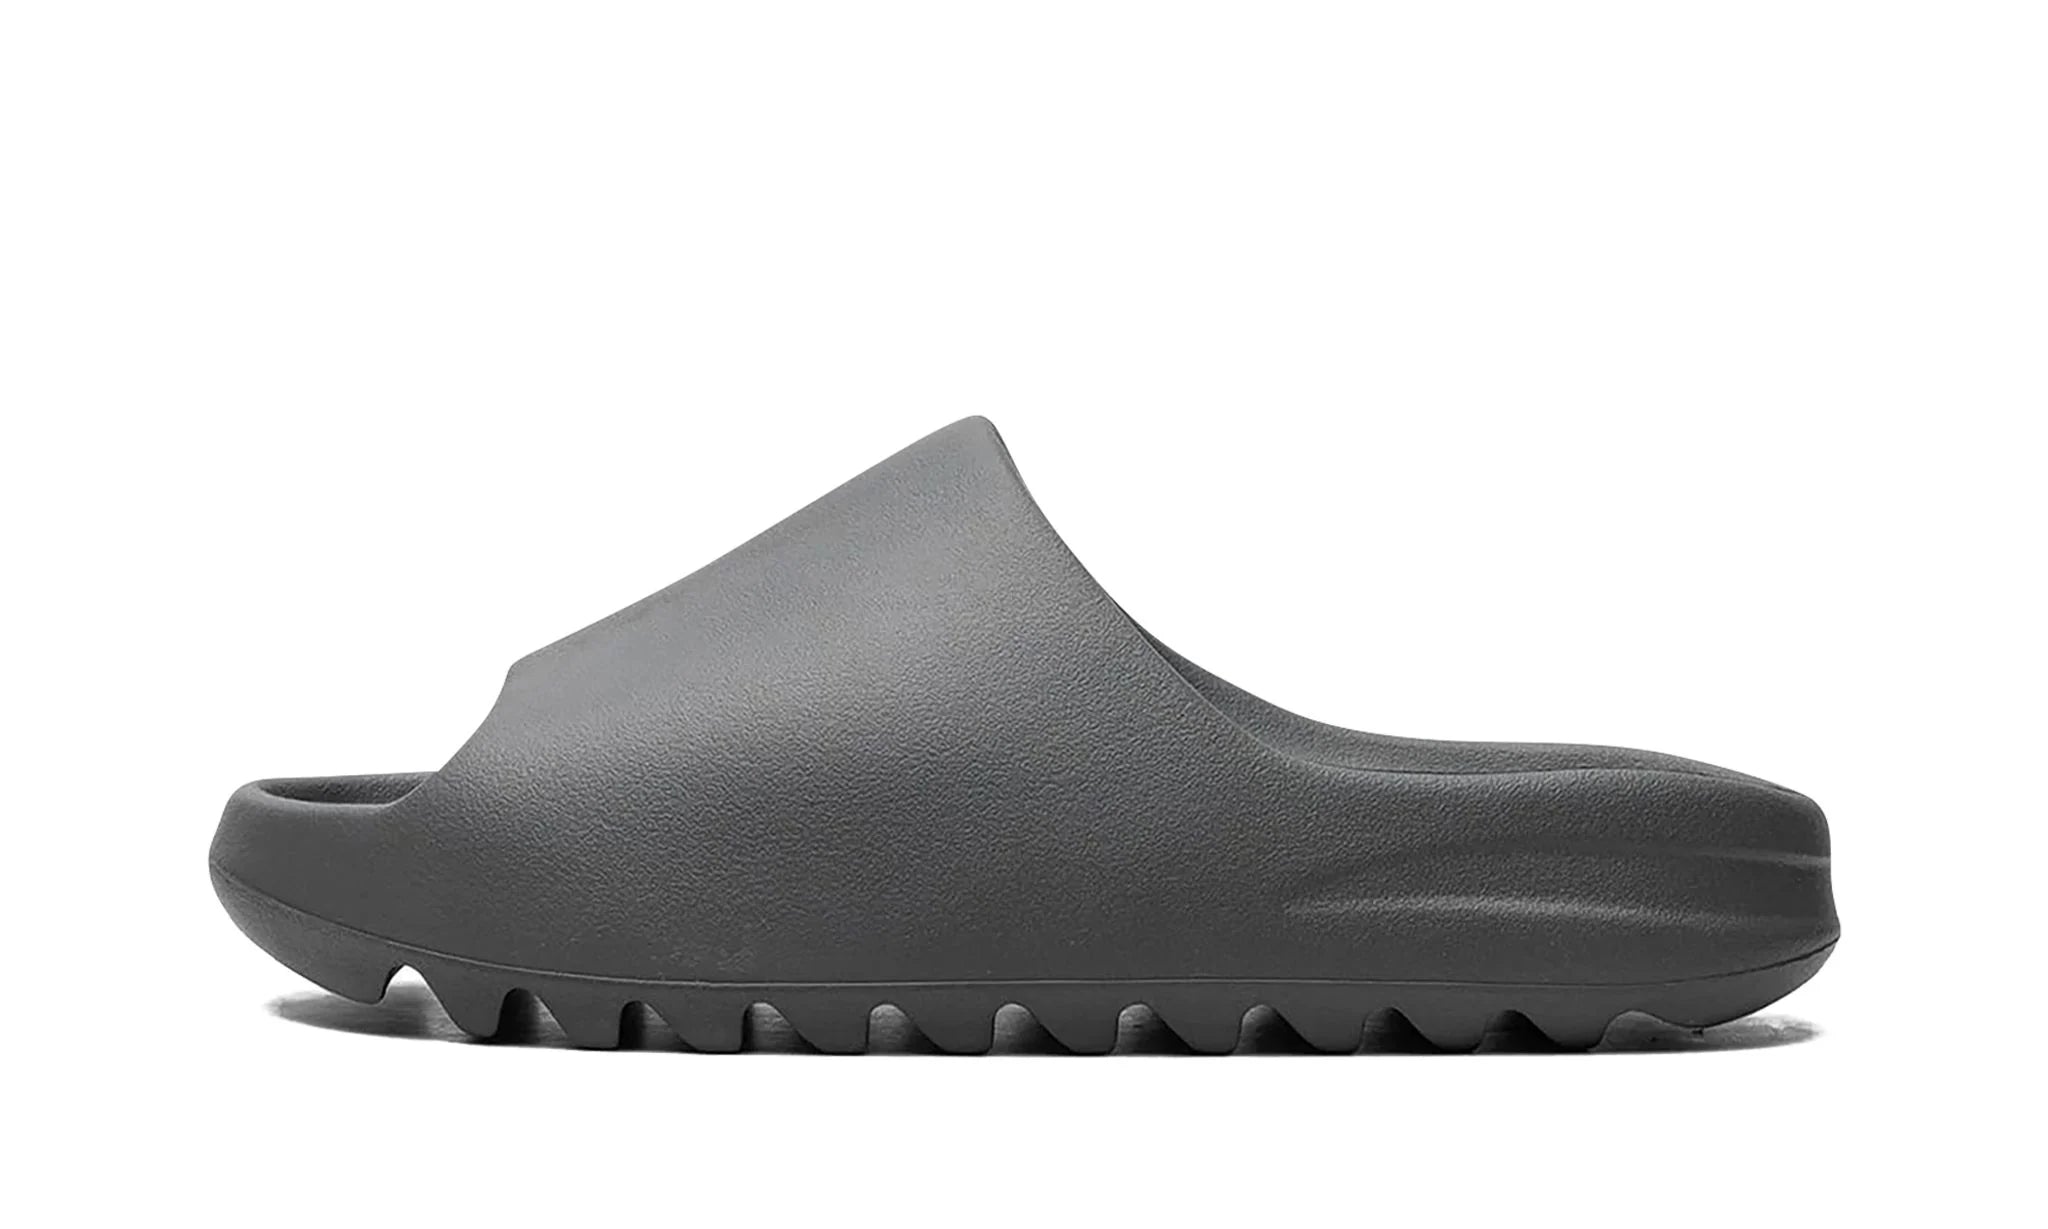 Adidas Yeezy Slide Slate Grey - Yeezy Slide - Pirri